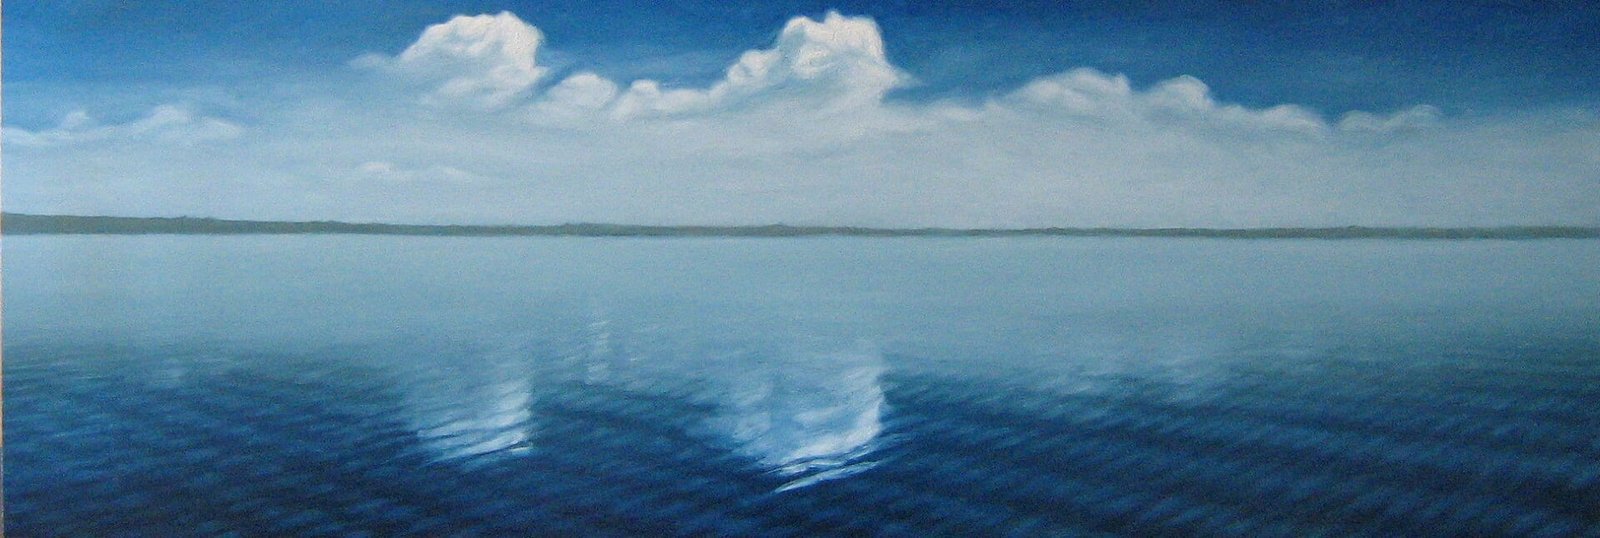 'Het water van Flakkee', impressie, Jan Neven, olieverf op paneel, 102,5 x 35 cm, 2008